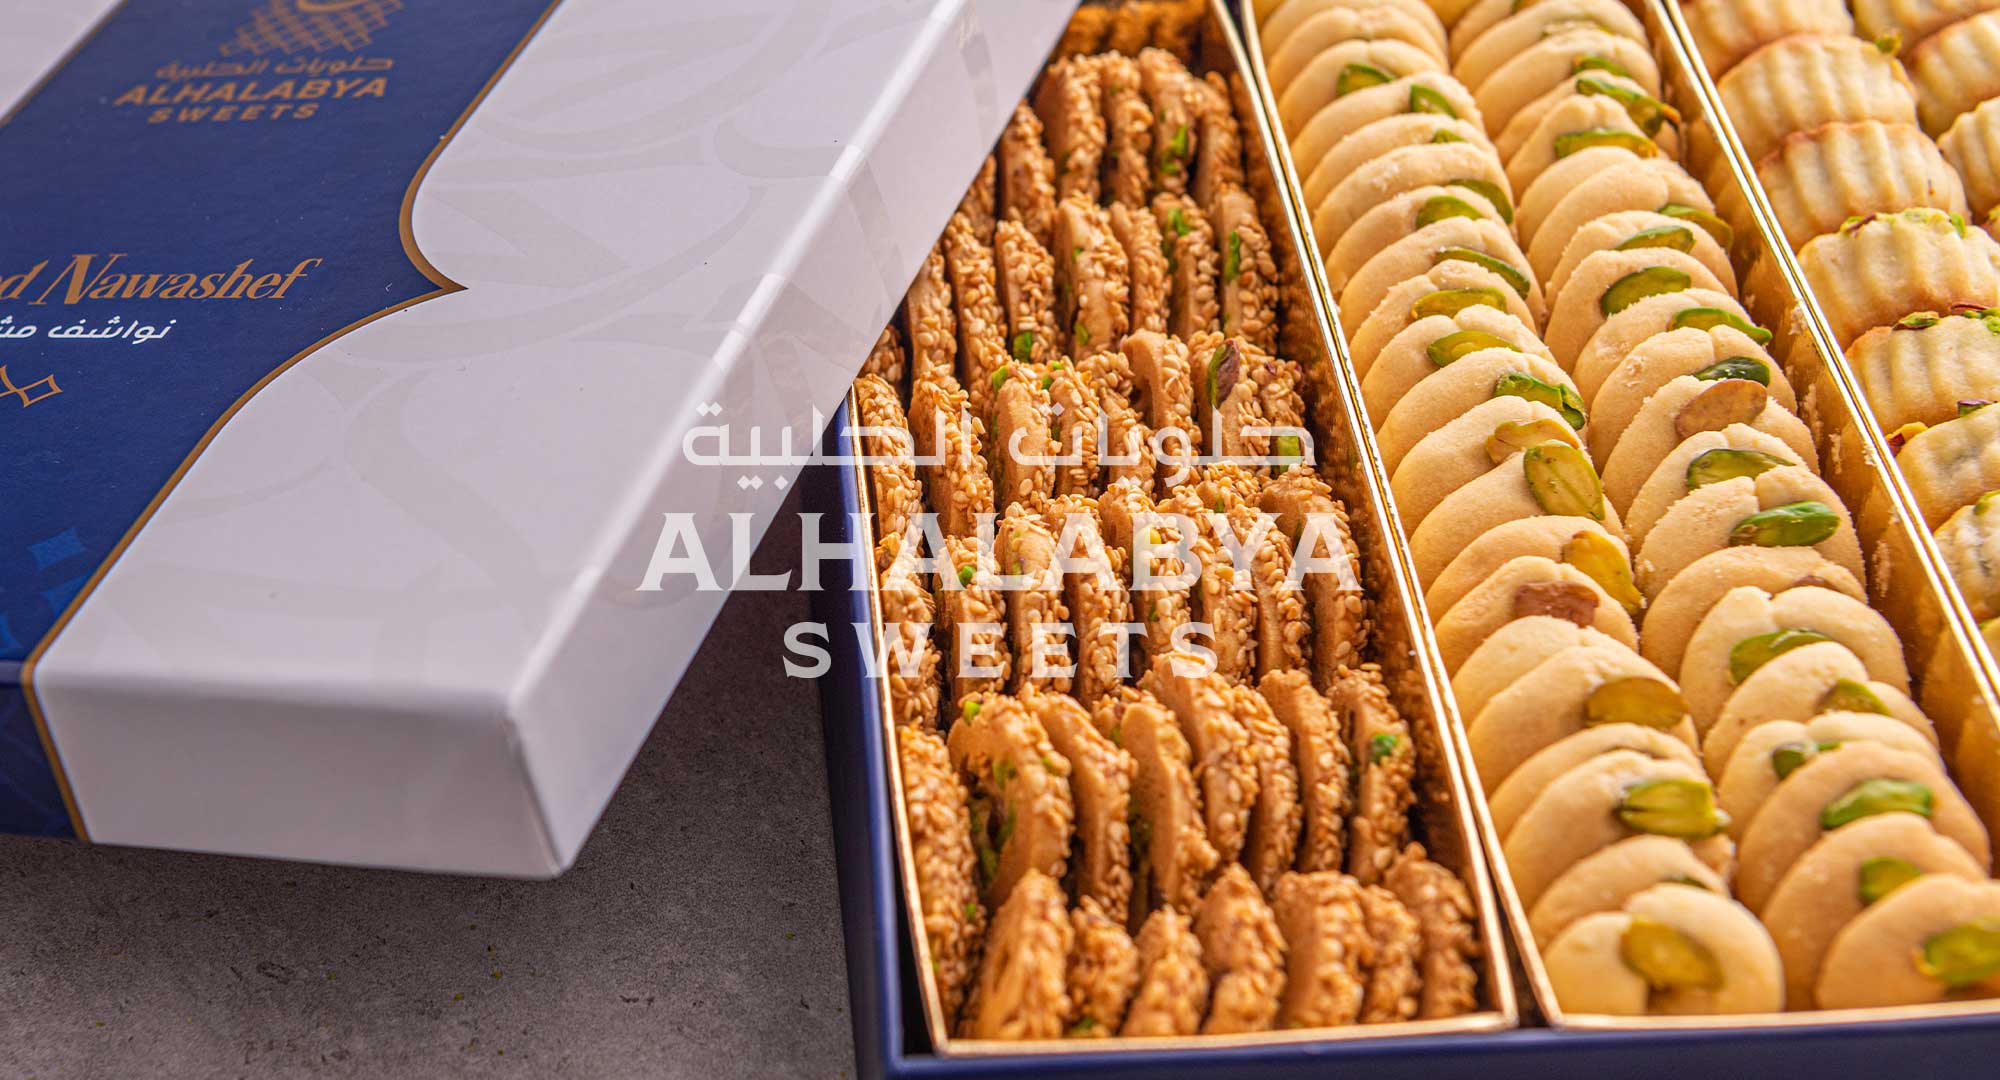 Signature Nawashef Offerings at Al Halabya Sweets